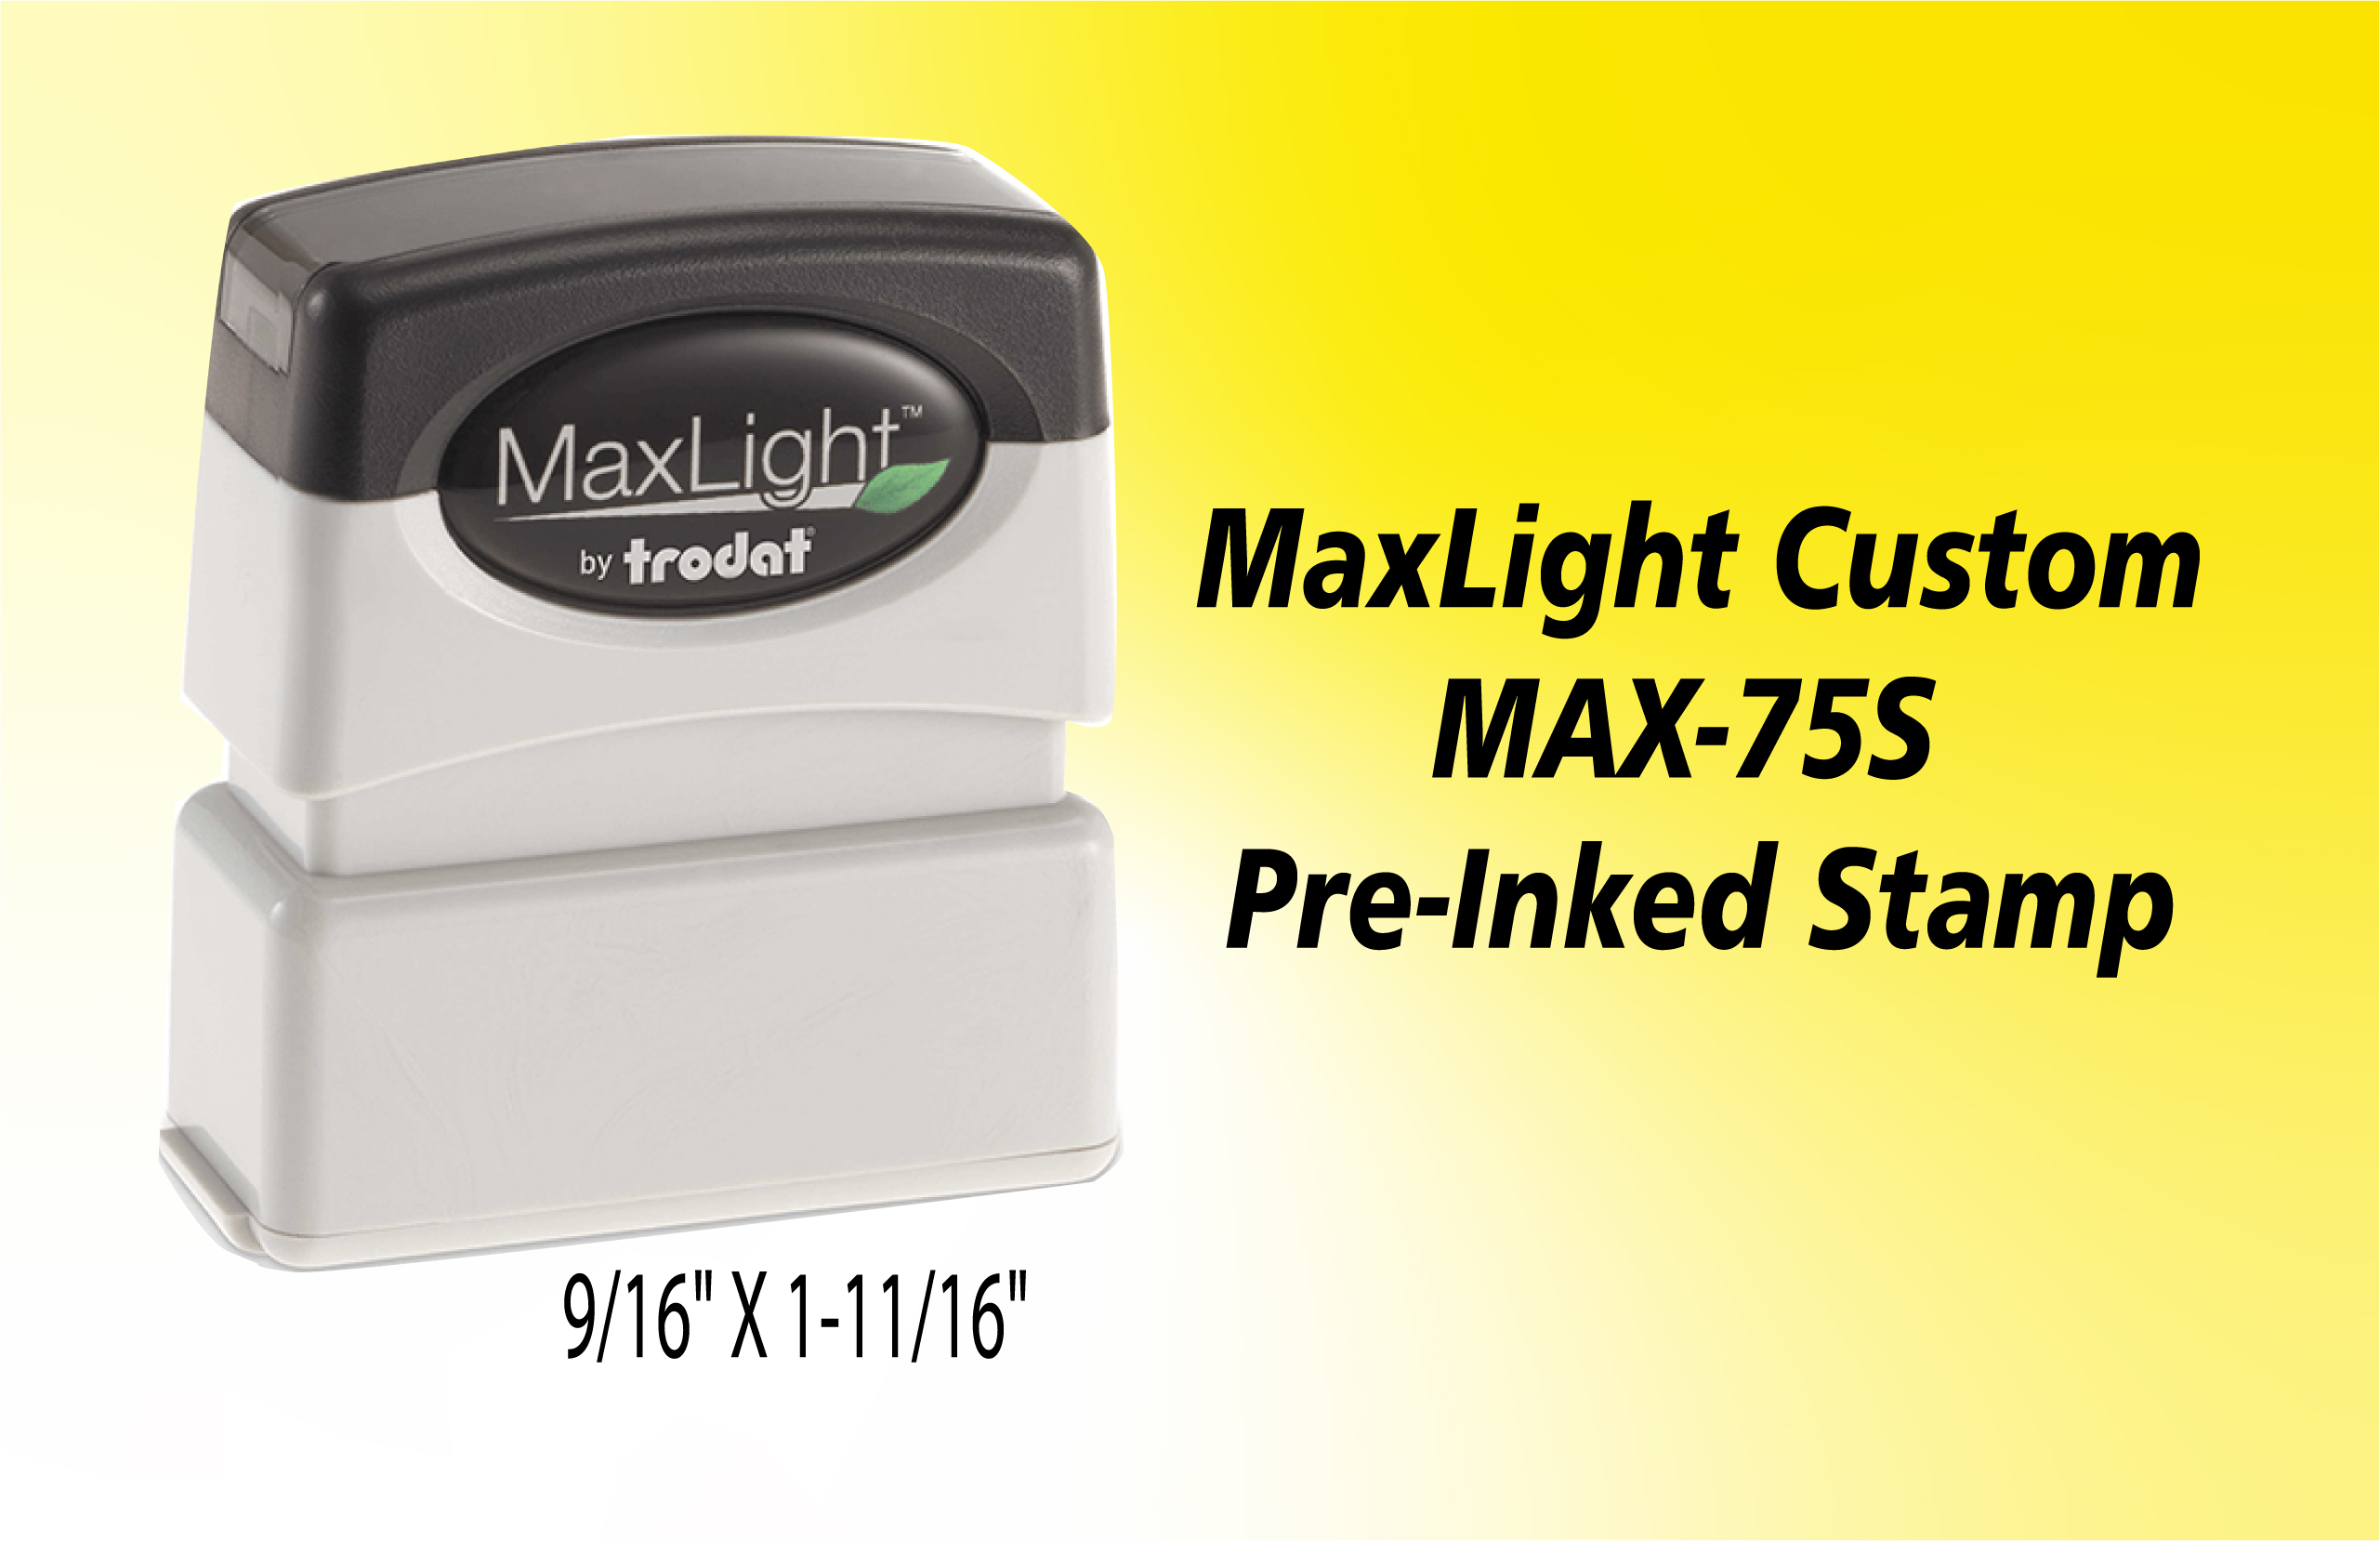 MaxLight 75 S - Atlas Stamp & Engraving